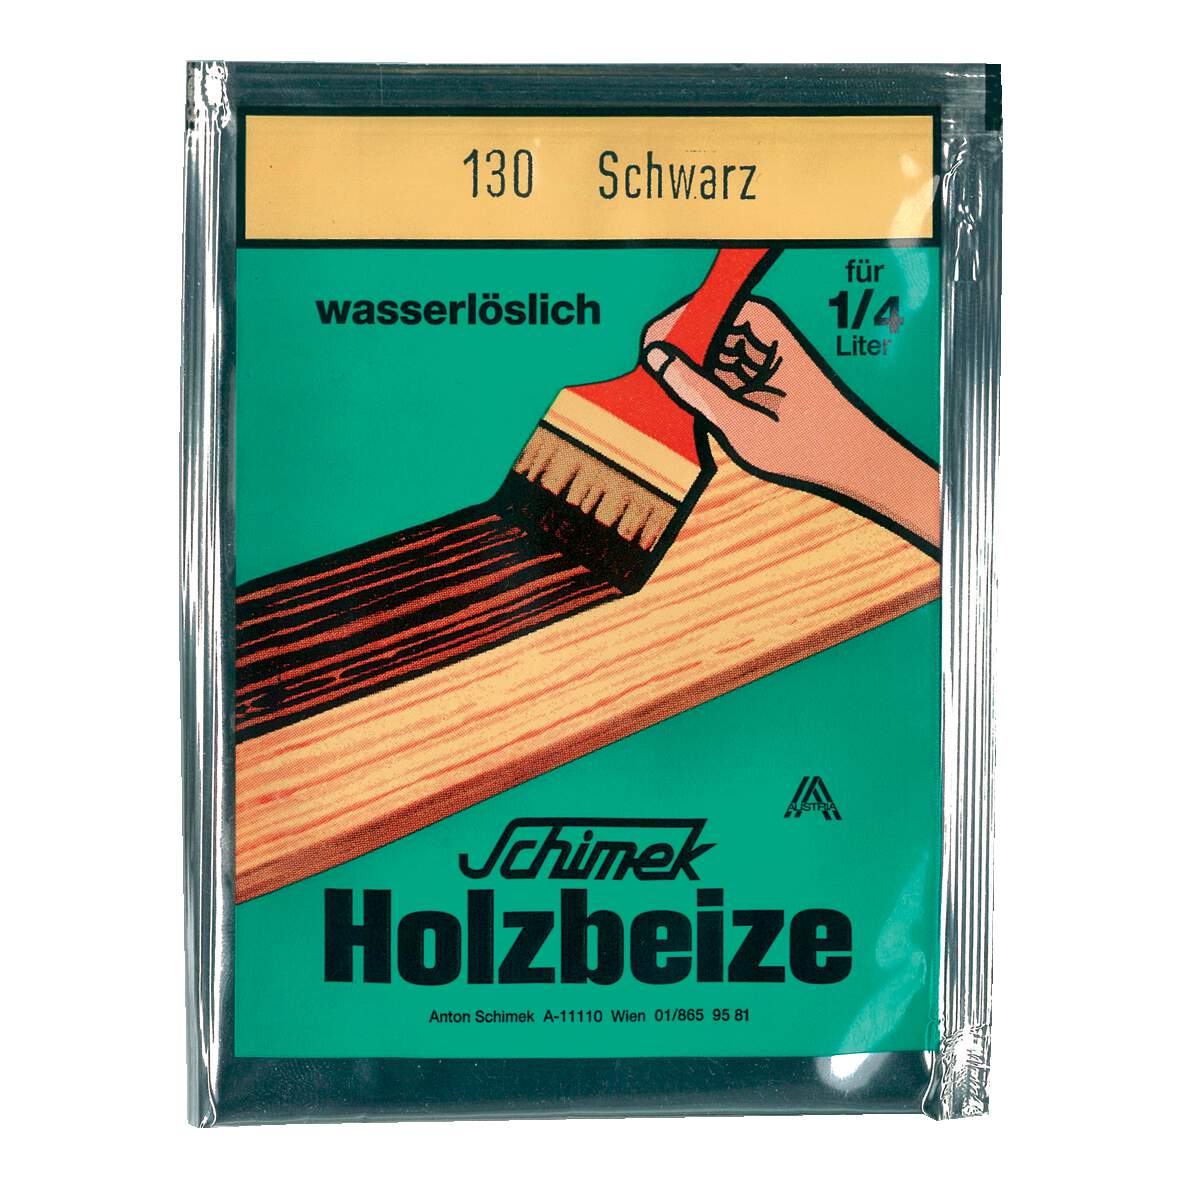 1216634 - Holzbeize wasserlöslich